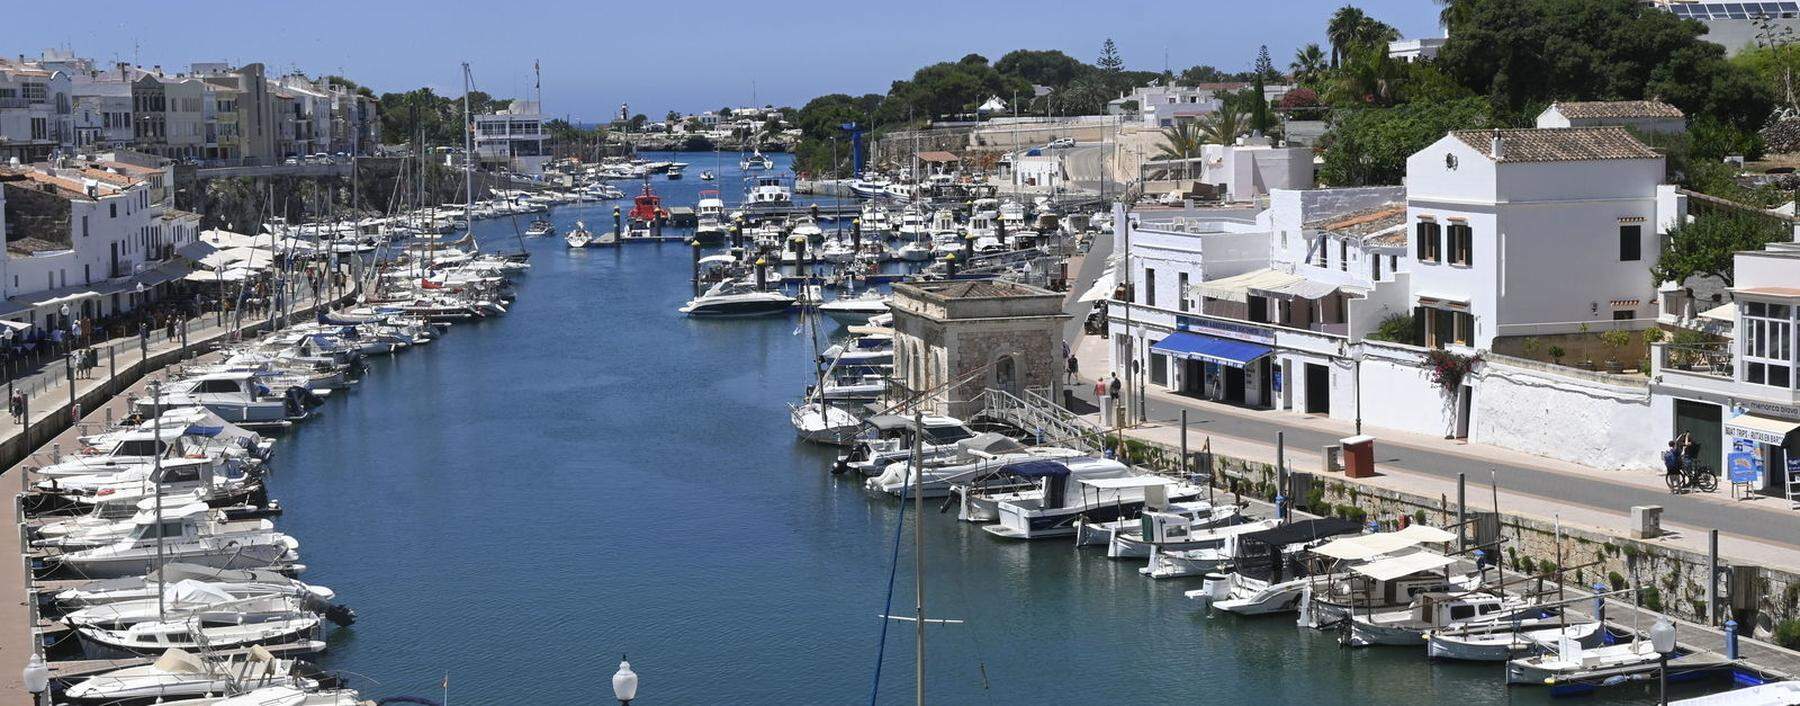 Menorca: Am alten Hafen von Ciutadella.